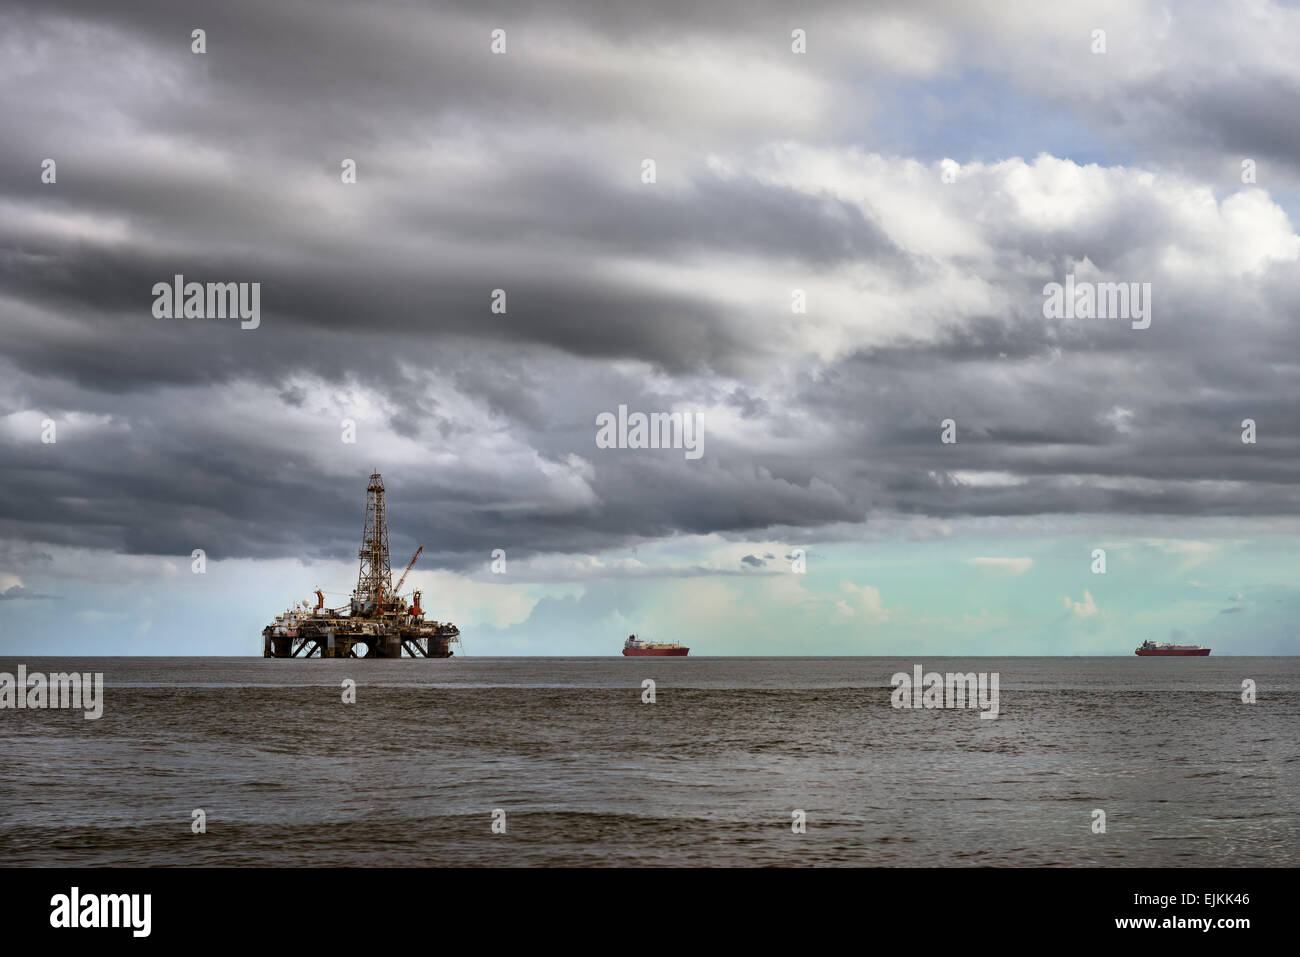 Offshore-Öl-Rig-Plattform am Meer Erdöl-Industrie Stockfoto